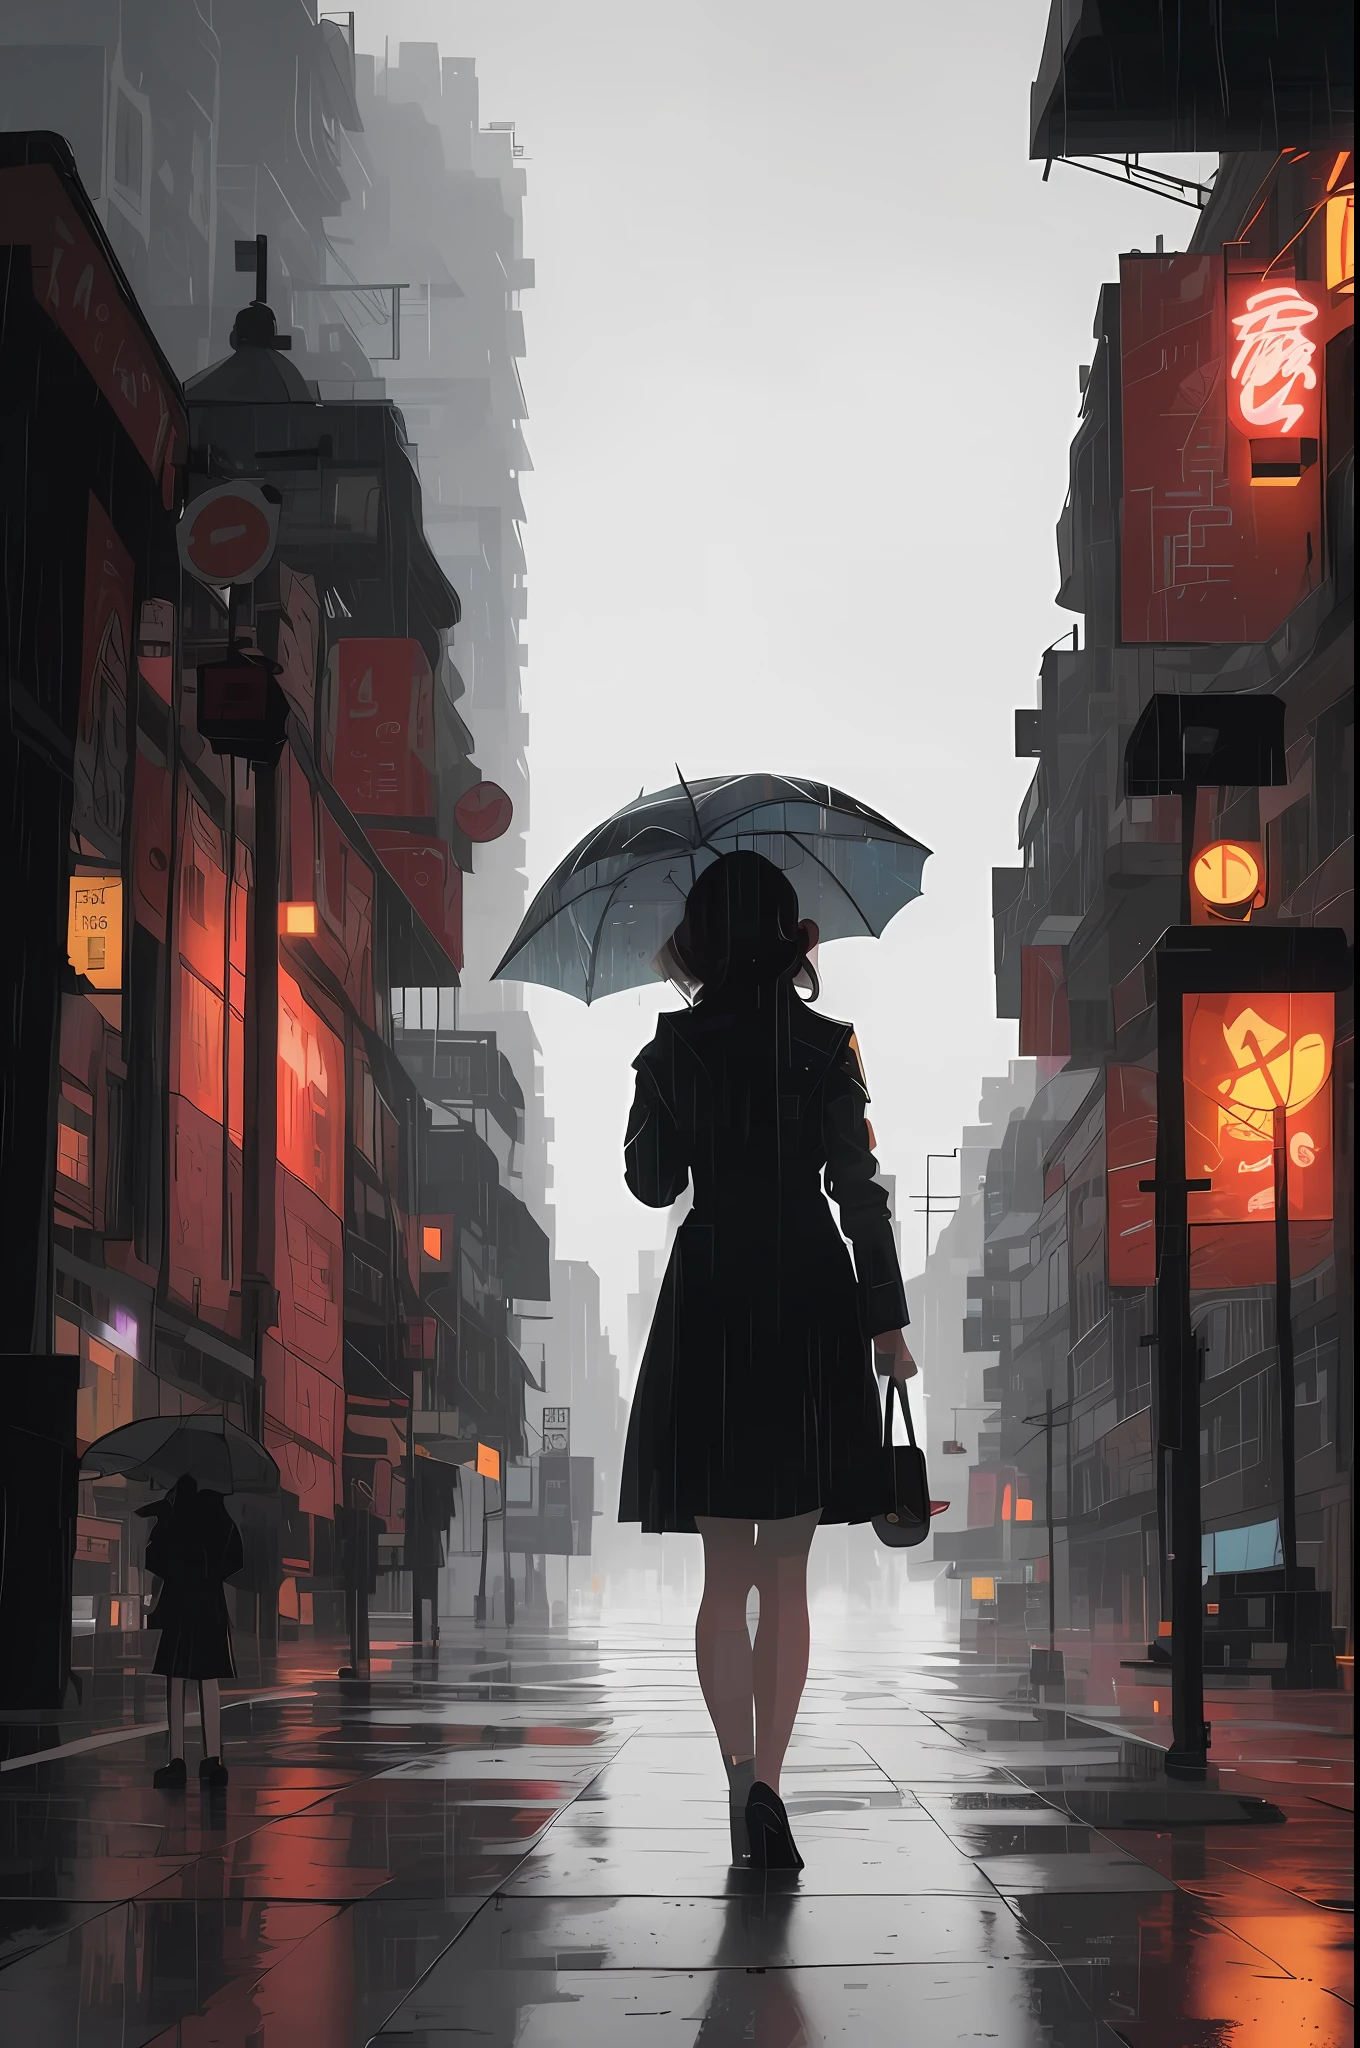 有一位女士撑着伞走在街上, 阴雨绵绵的赛博朋克城市, 在城市里流浪, 雨街s in the background, 古魏兹风格的艺术品, 站在城市街道上, 雨街, 在一个赛博朋克城市, style of 阿莱娜·埃纳米, 雨夜, 艺术的. 阿莱娜·埃纳米, 风格化的都市幻想艺术作品